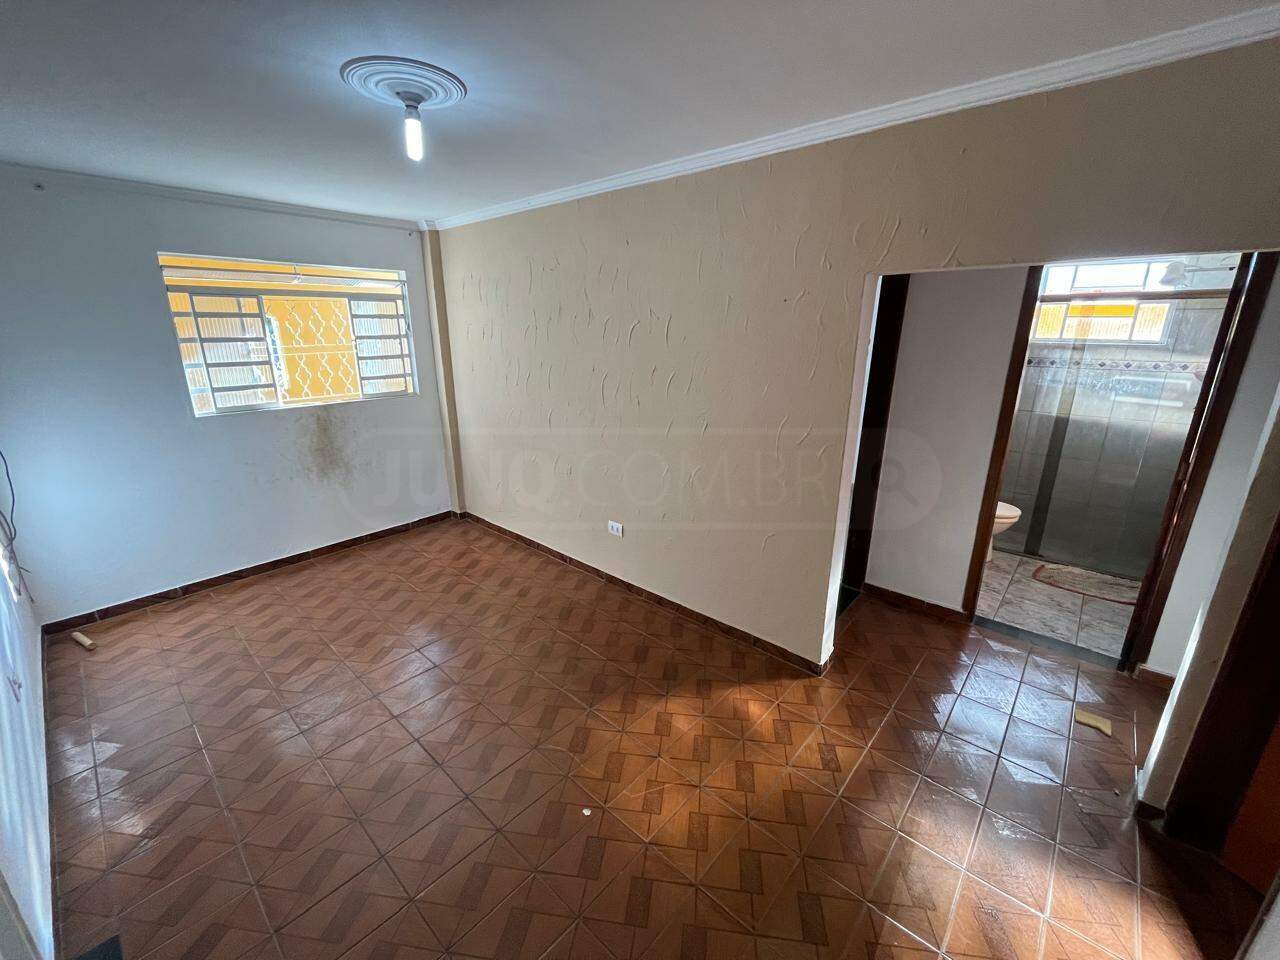 Casa para alugar, 3 quartos, 2 vagas, no bairro Santa Terezinha em Piracicaba - SP